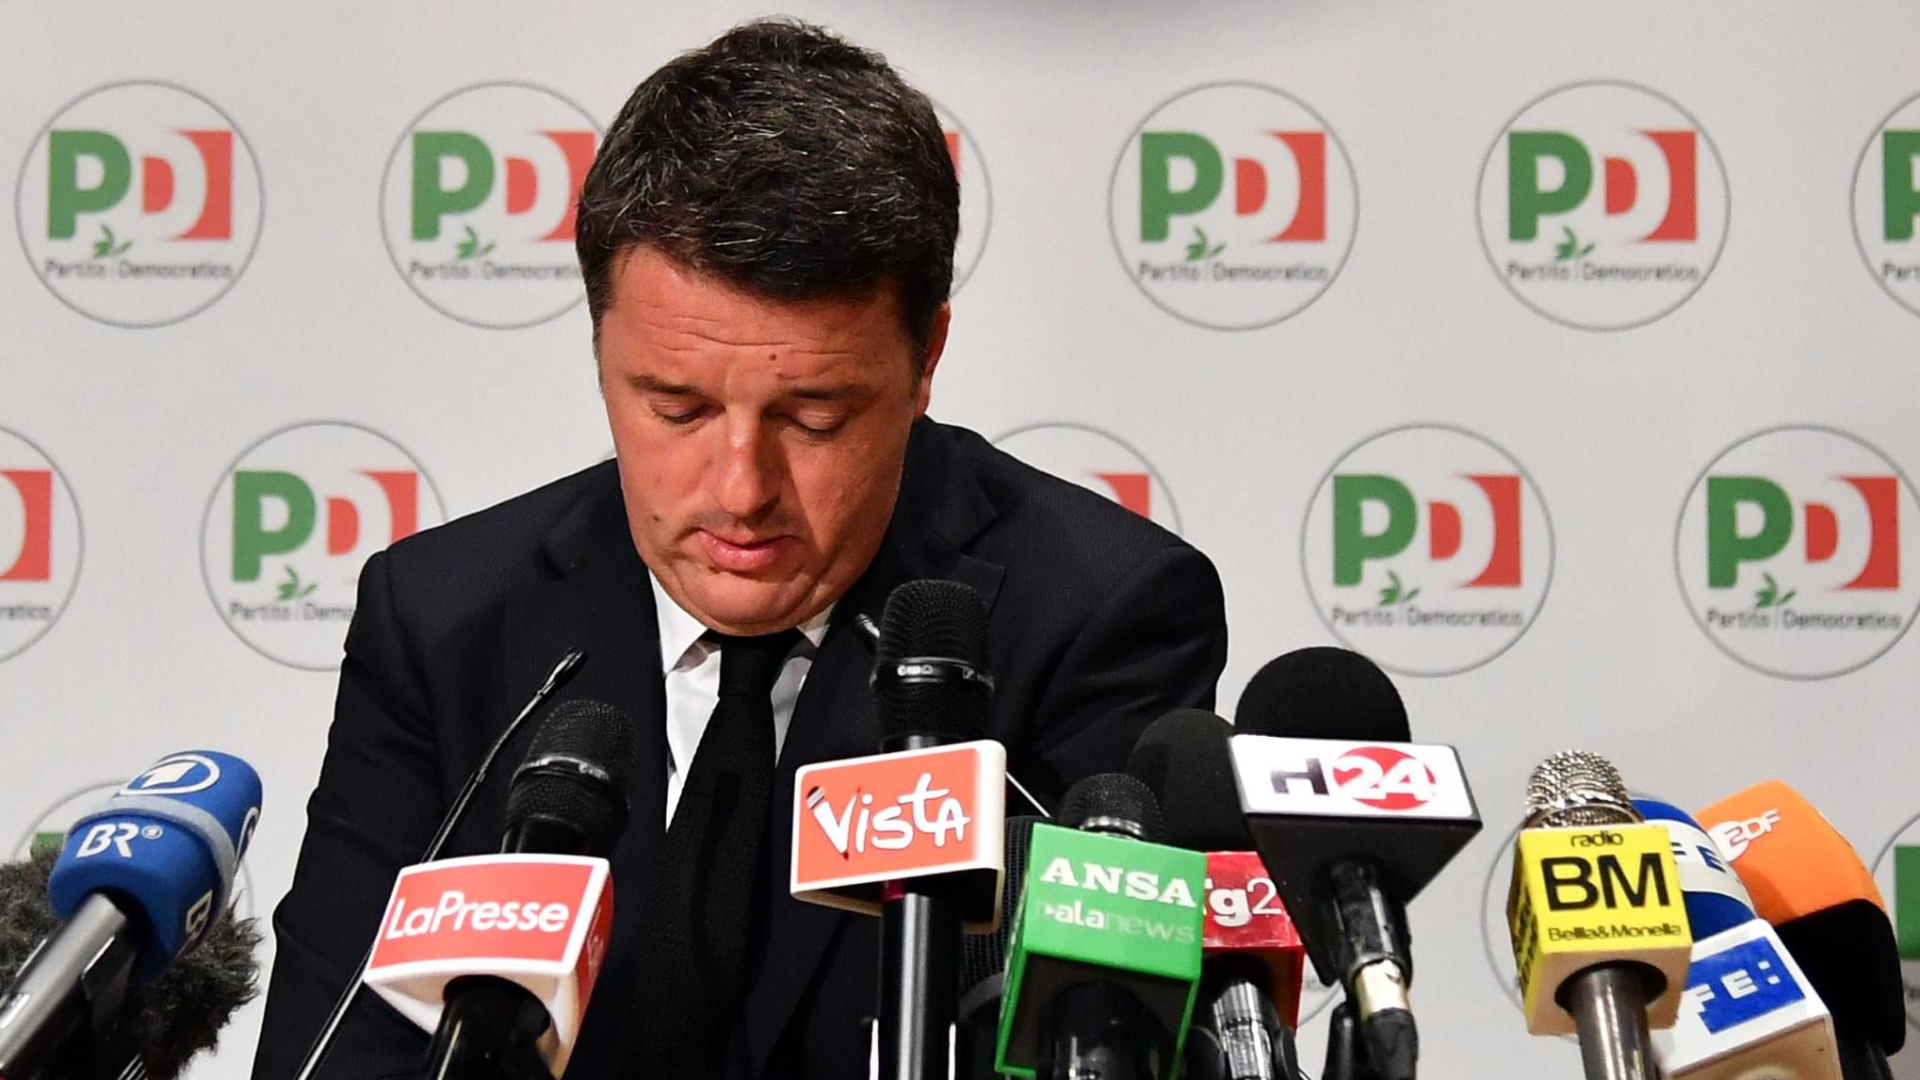 Matteo Renzi kündigt seinen Rücktritt als Parteichef an